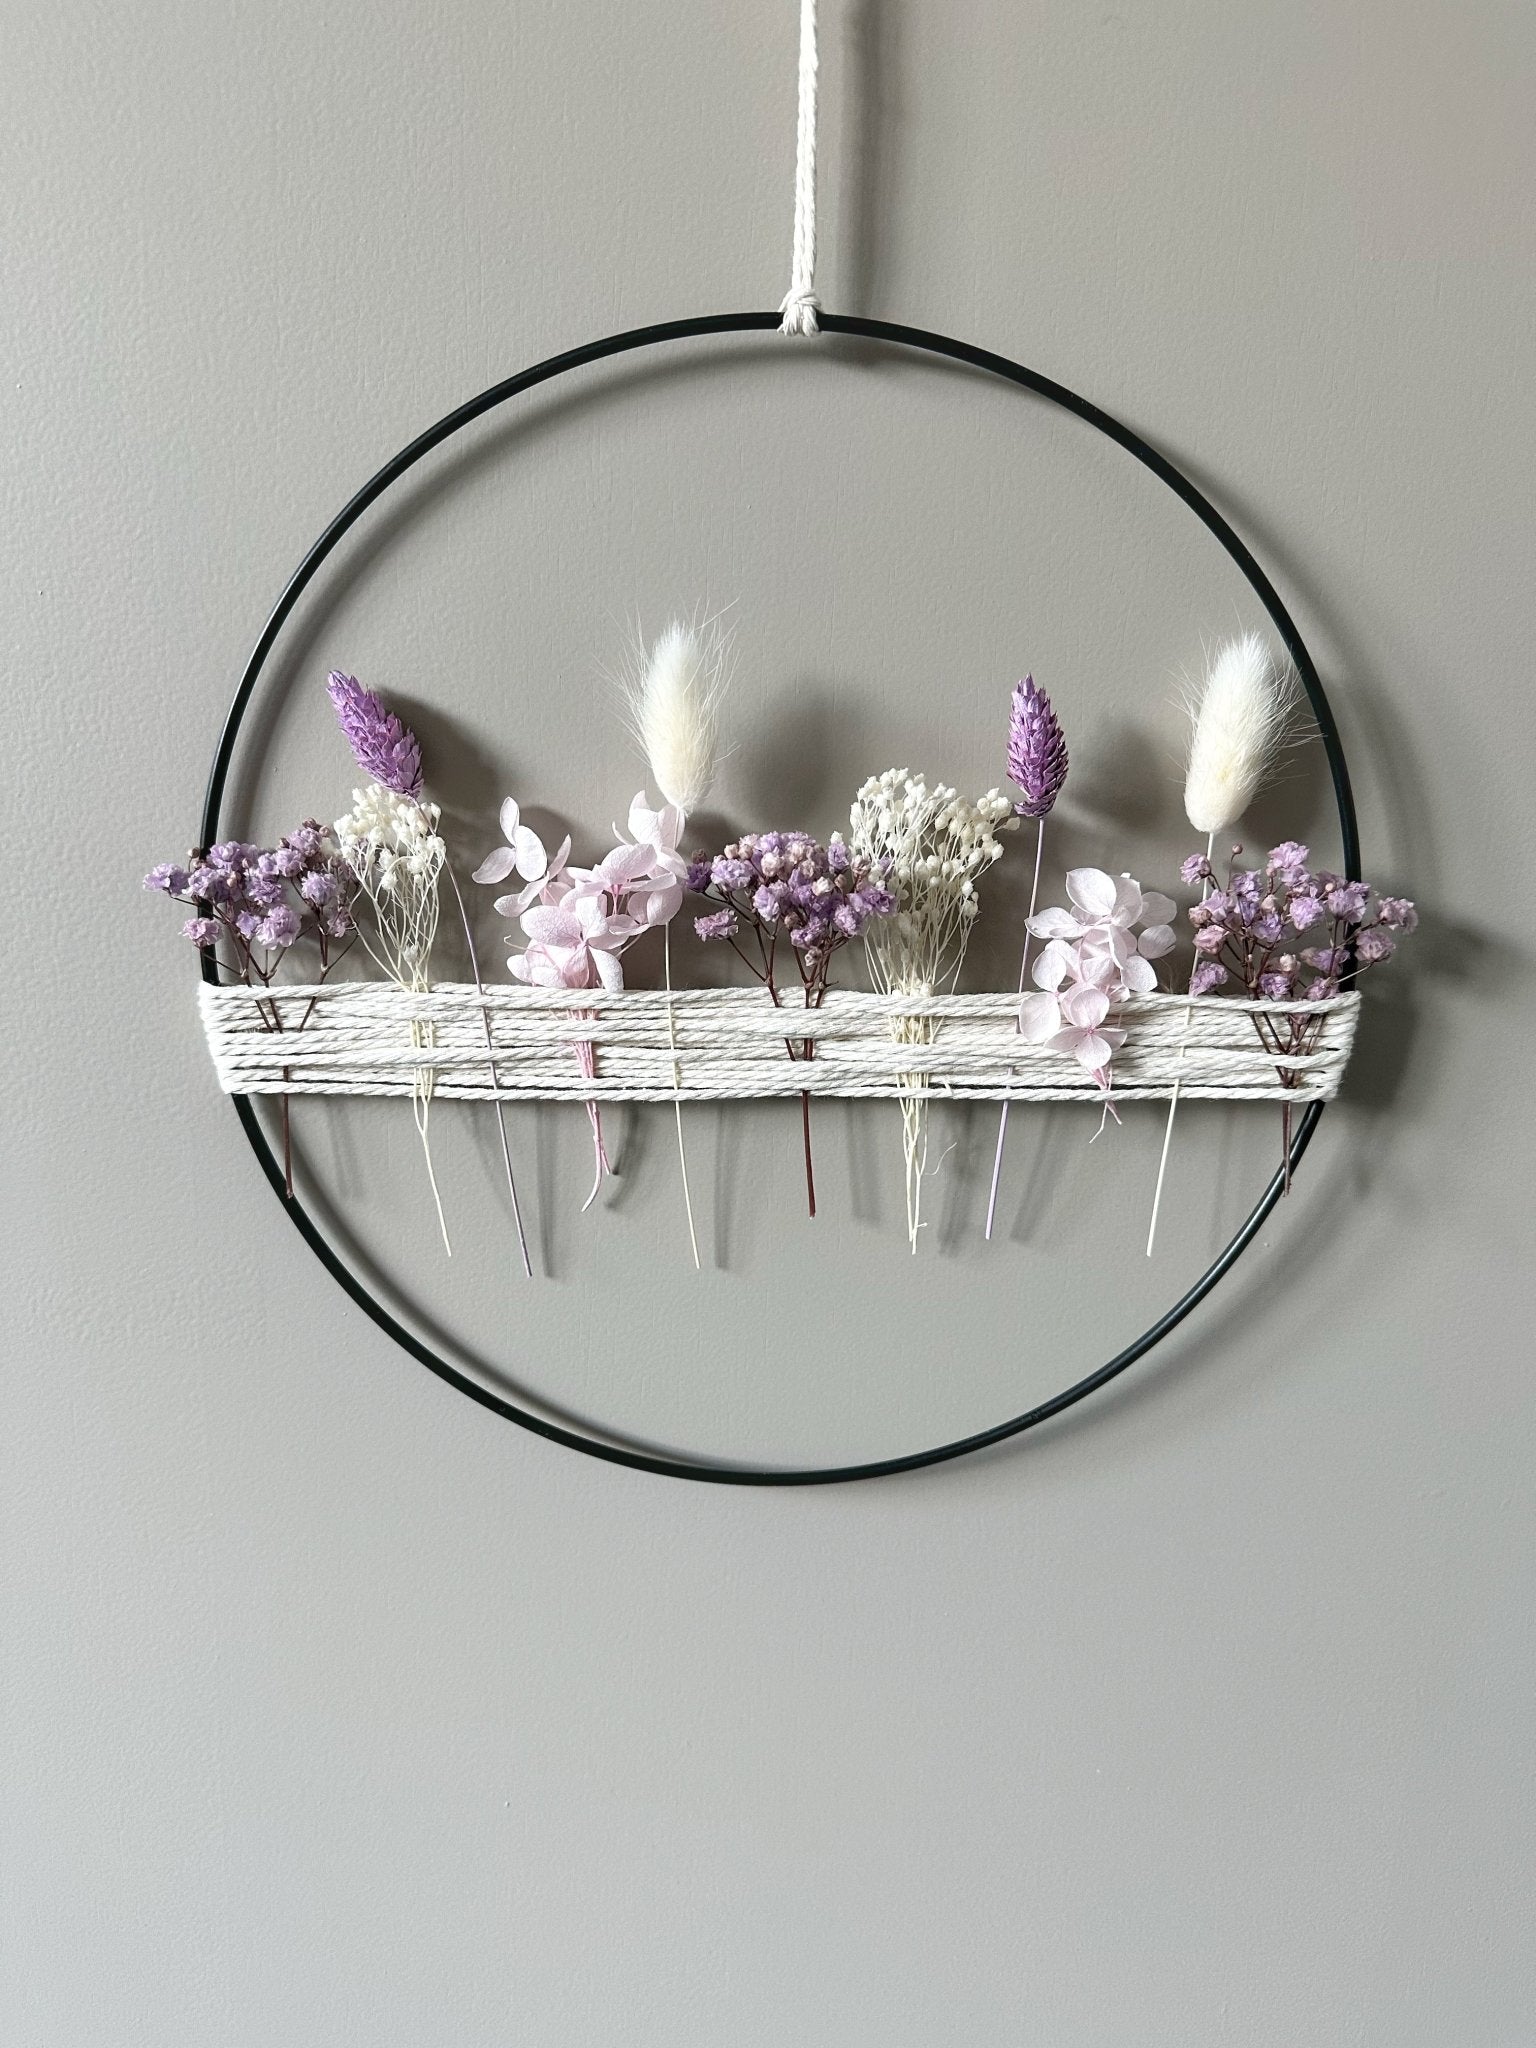 Metallring mit lila weißen Trockenblumen und Garn - Trockenblumen